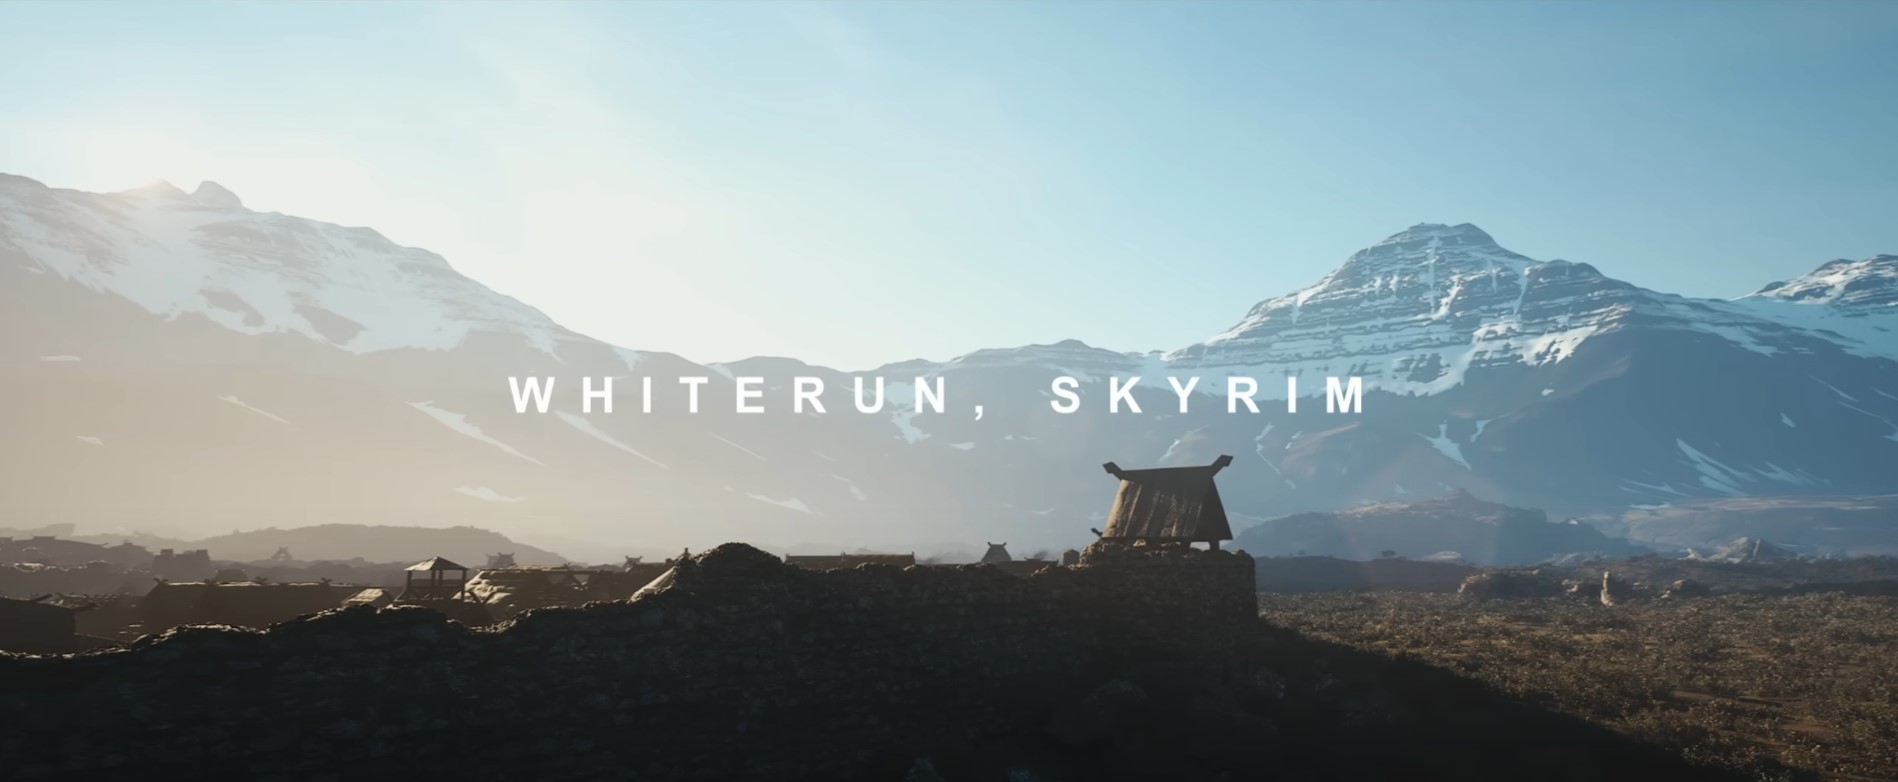 skyrim-whiterun-unreal-engine-5-leo-torres